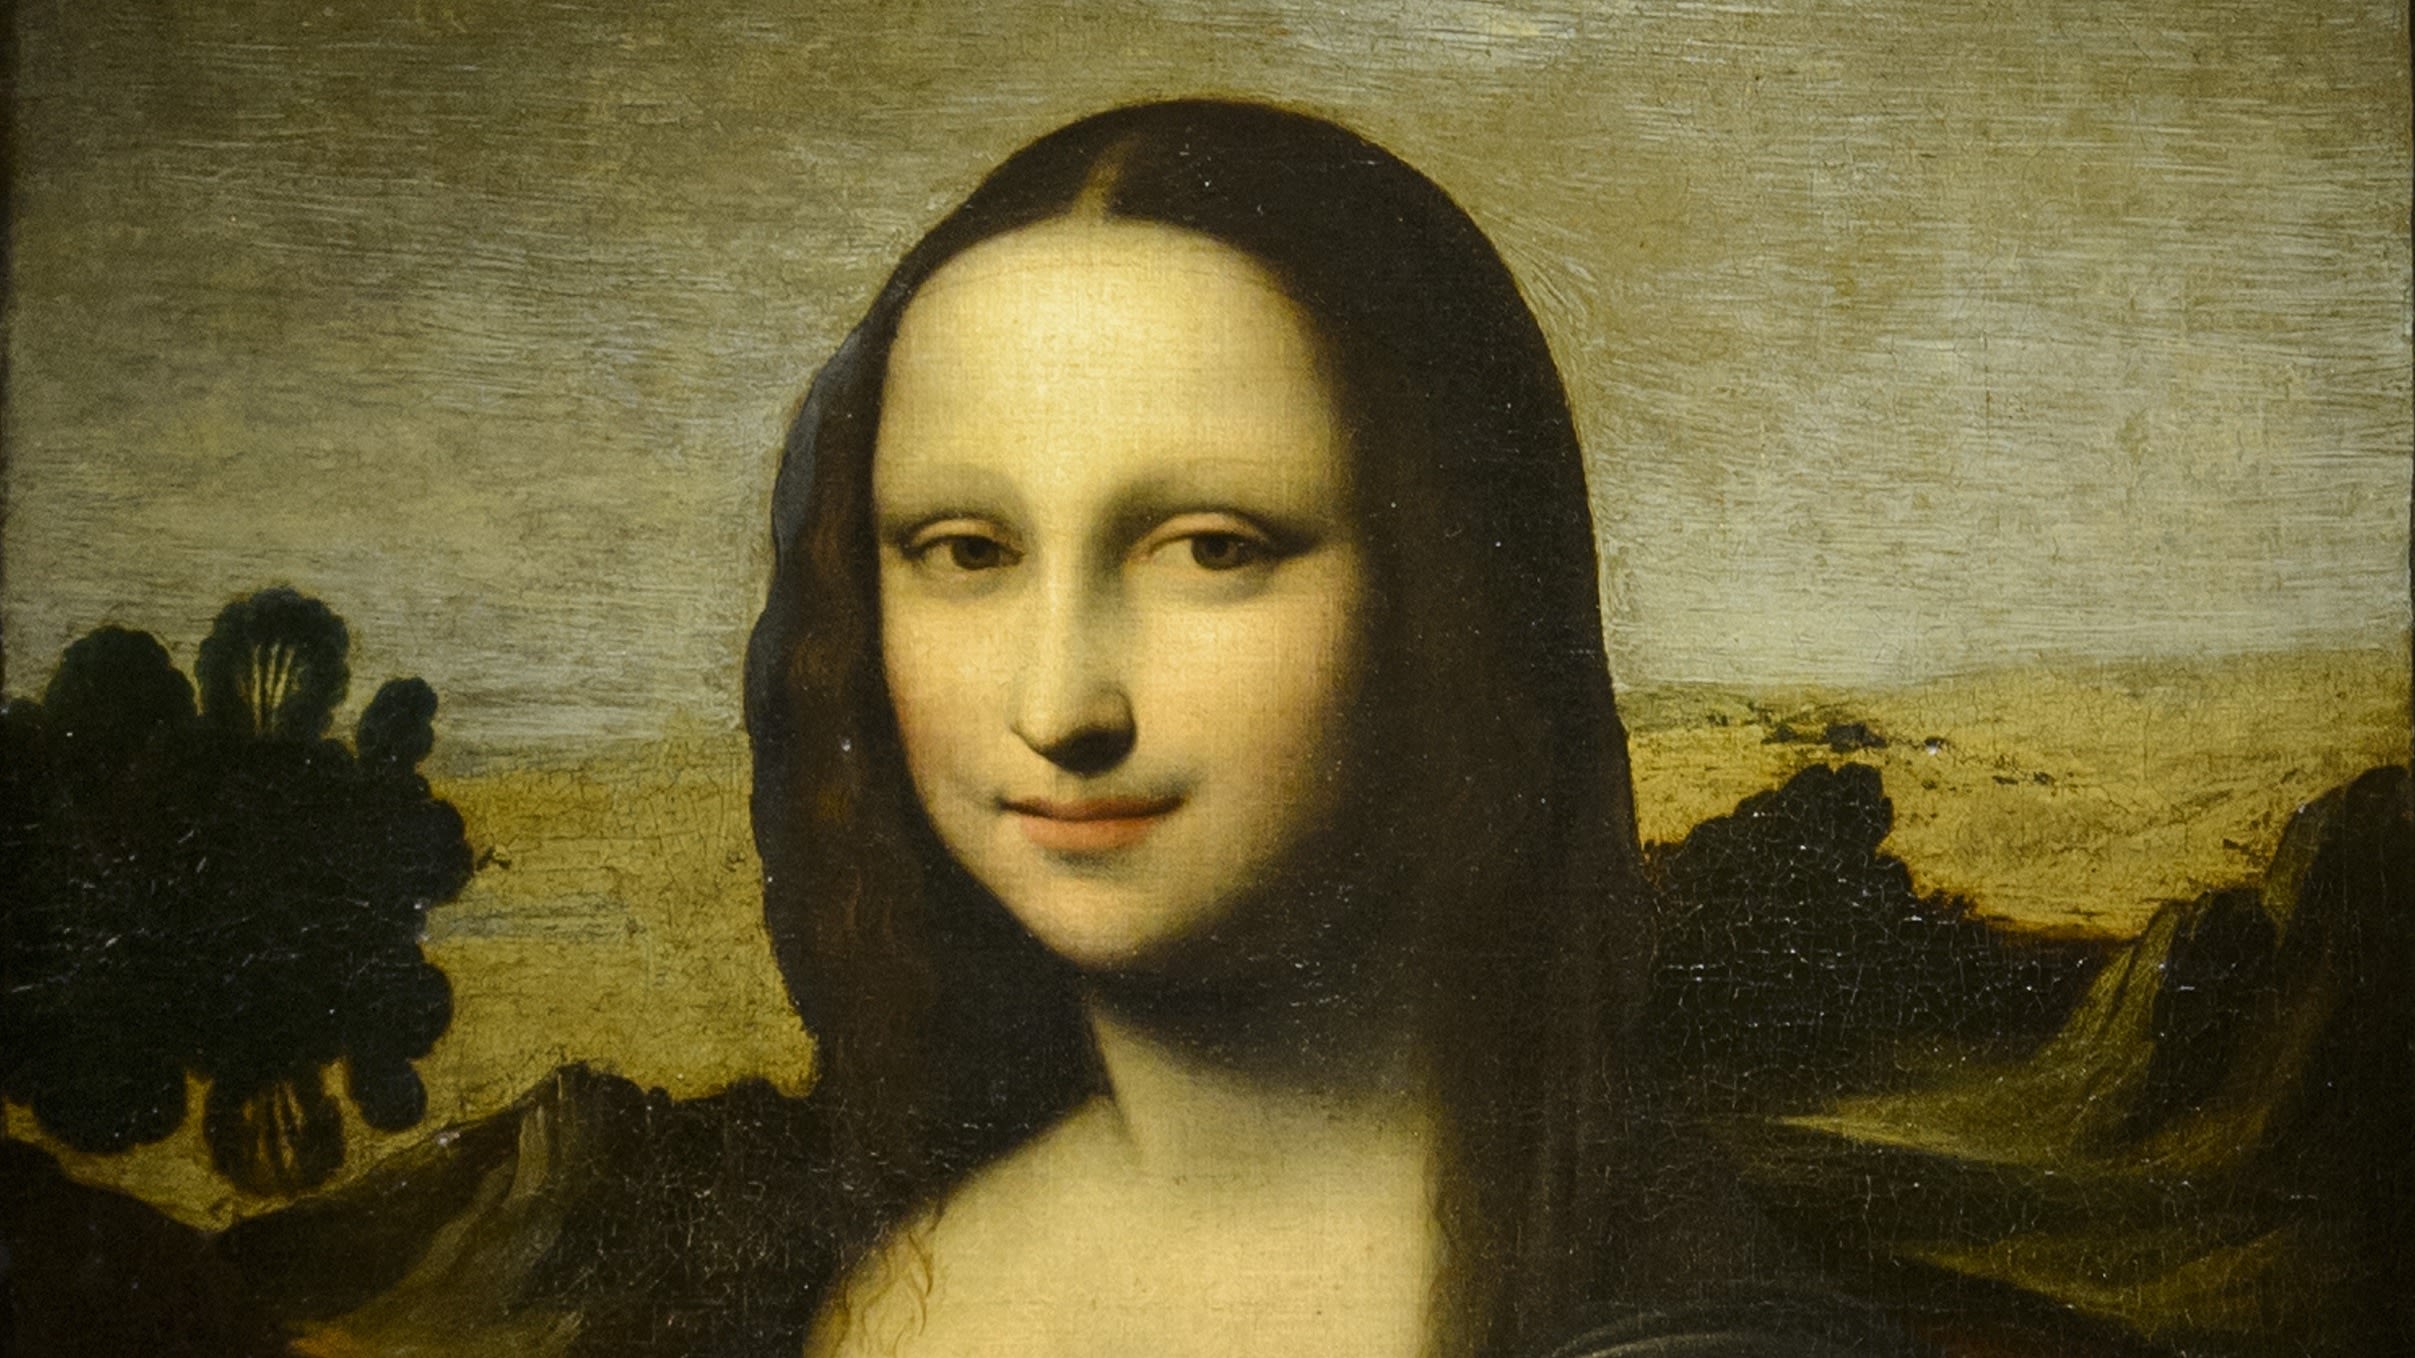 Is there a 2nd 'Mona Lisa' painted by Leonardo da Vinci?